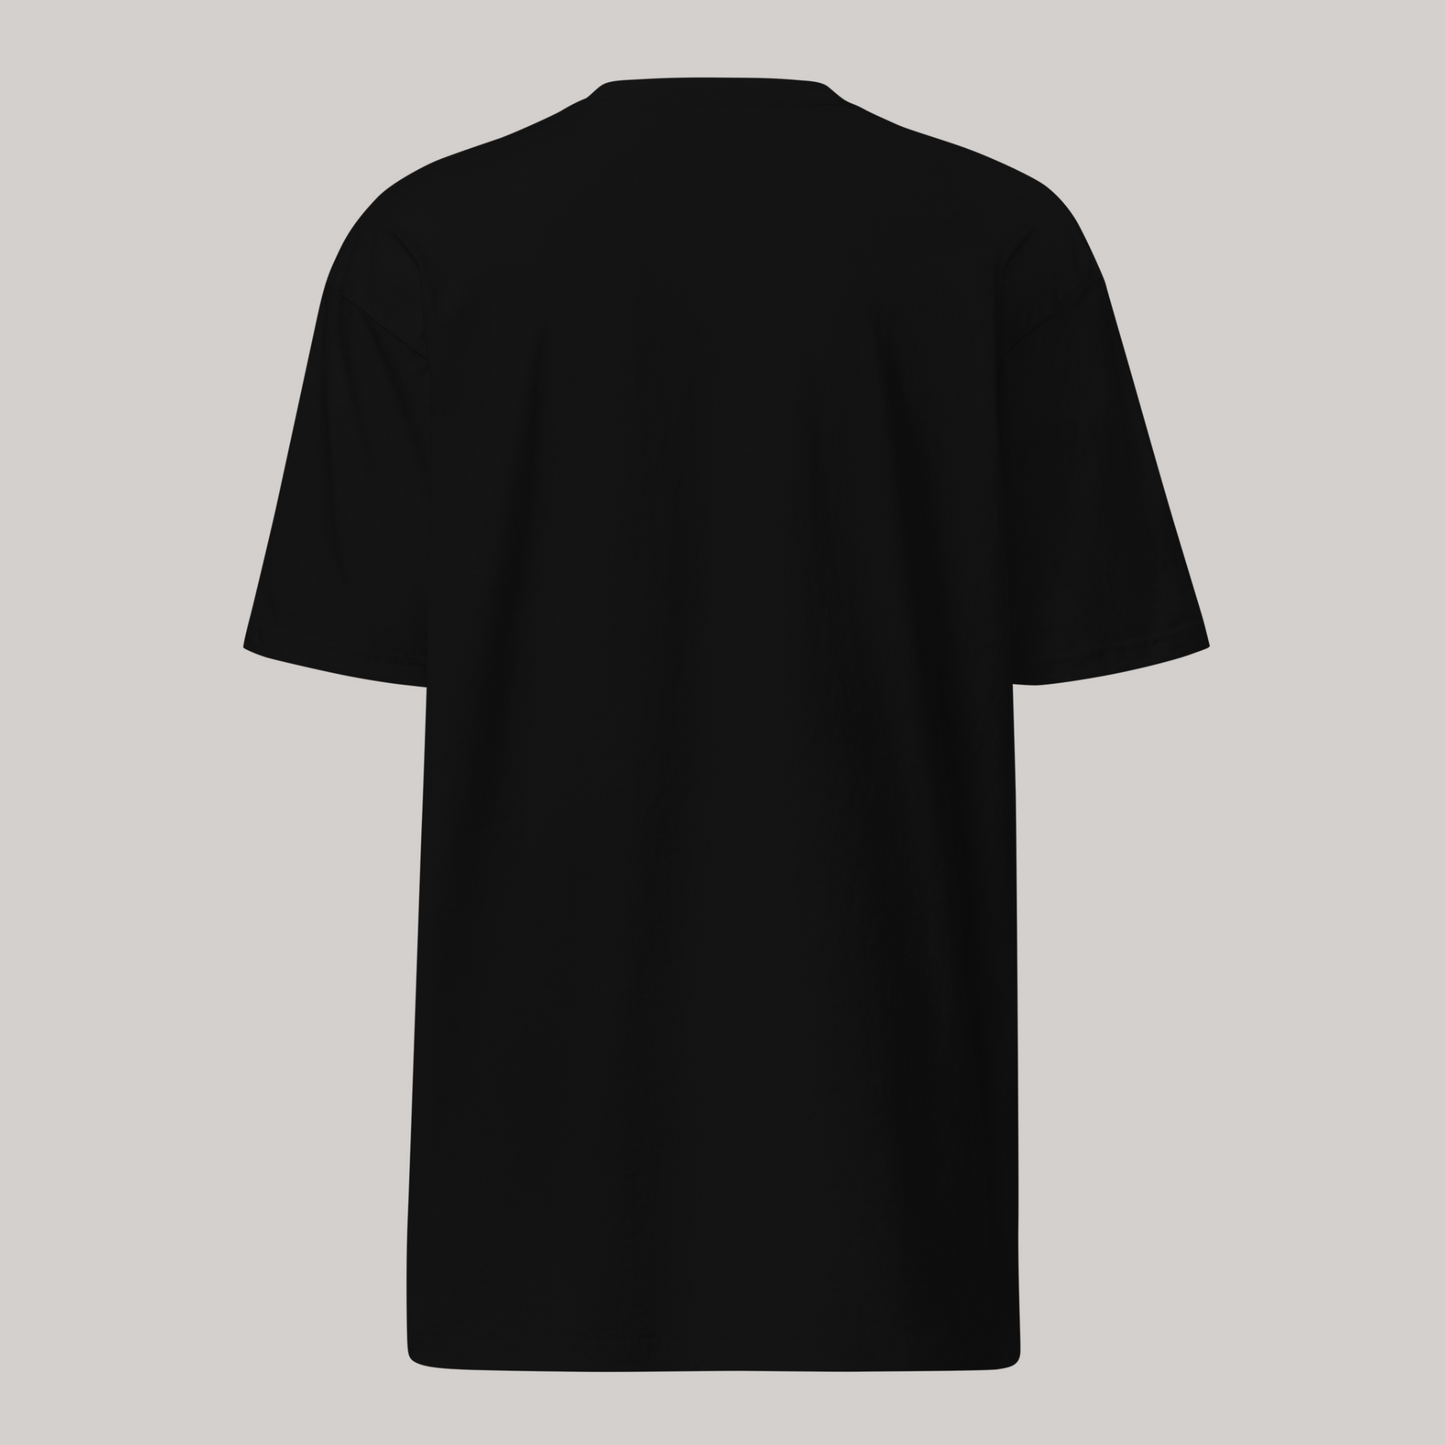 Enigma x Black T-Shirt